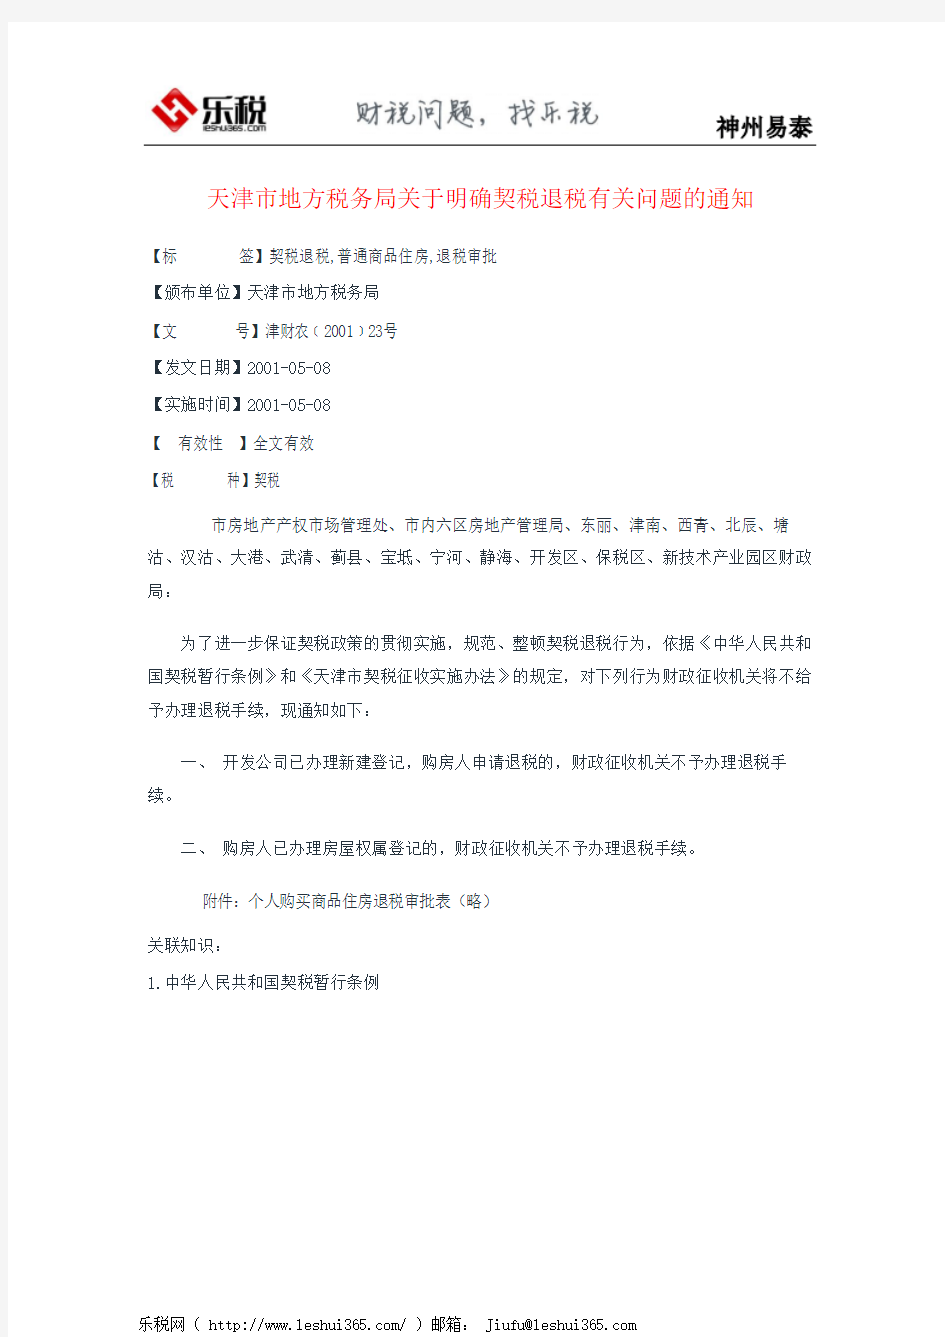 天津市地方税务局关于明确契税退税有关问题的通知